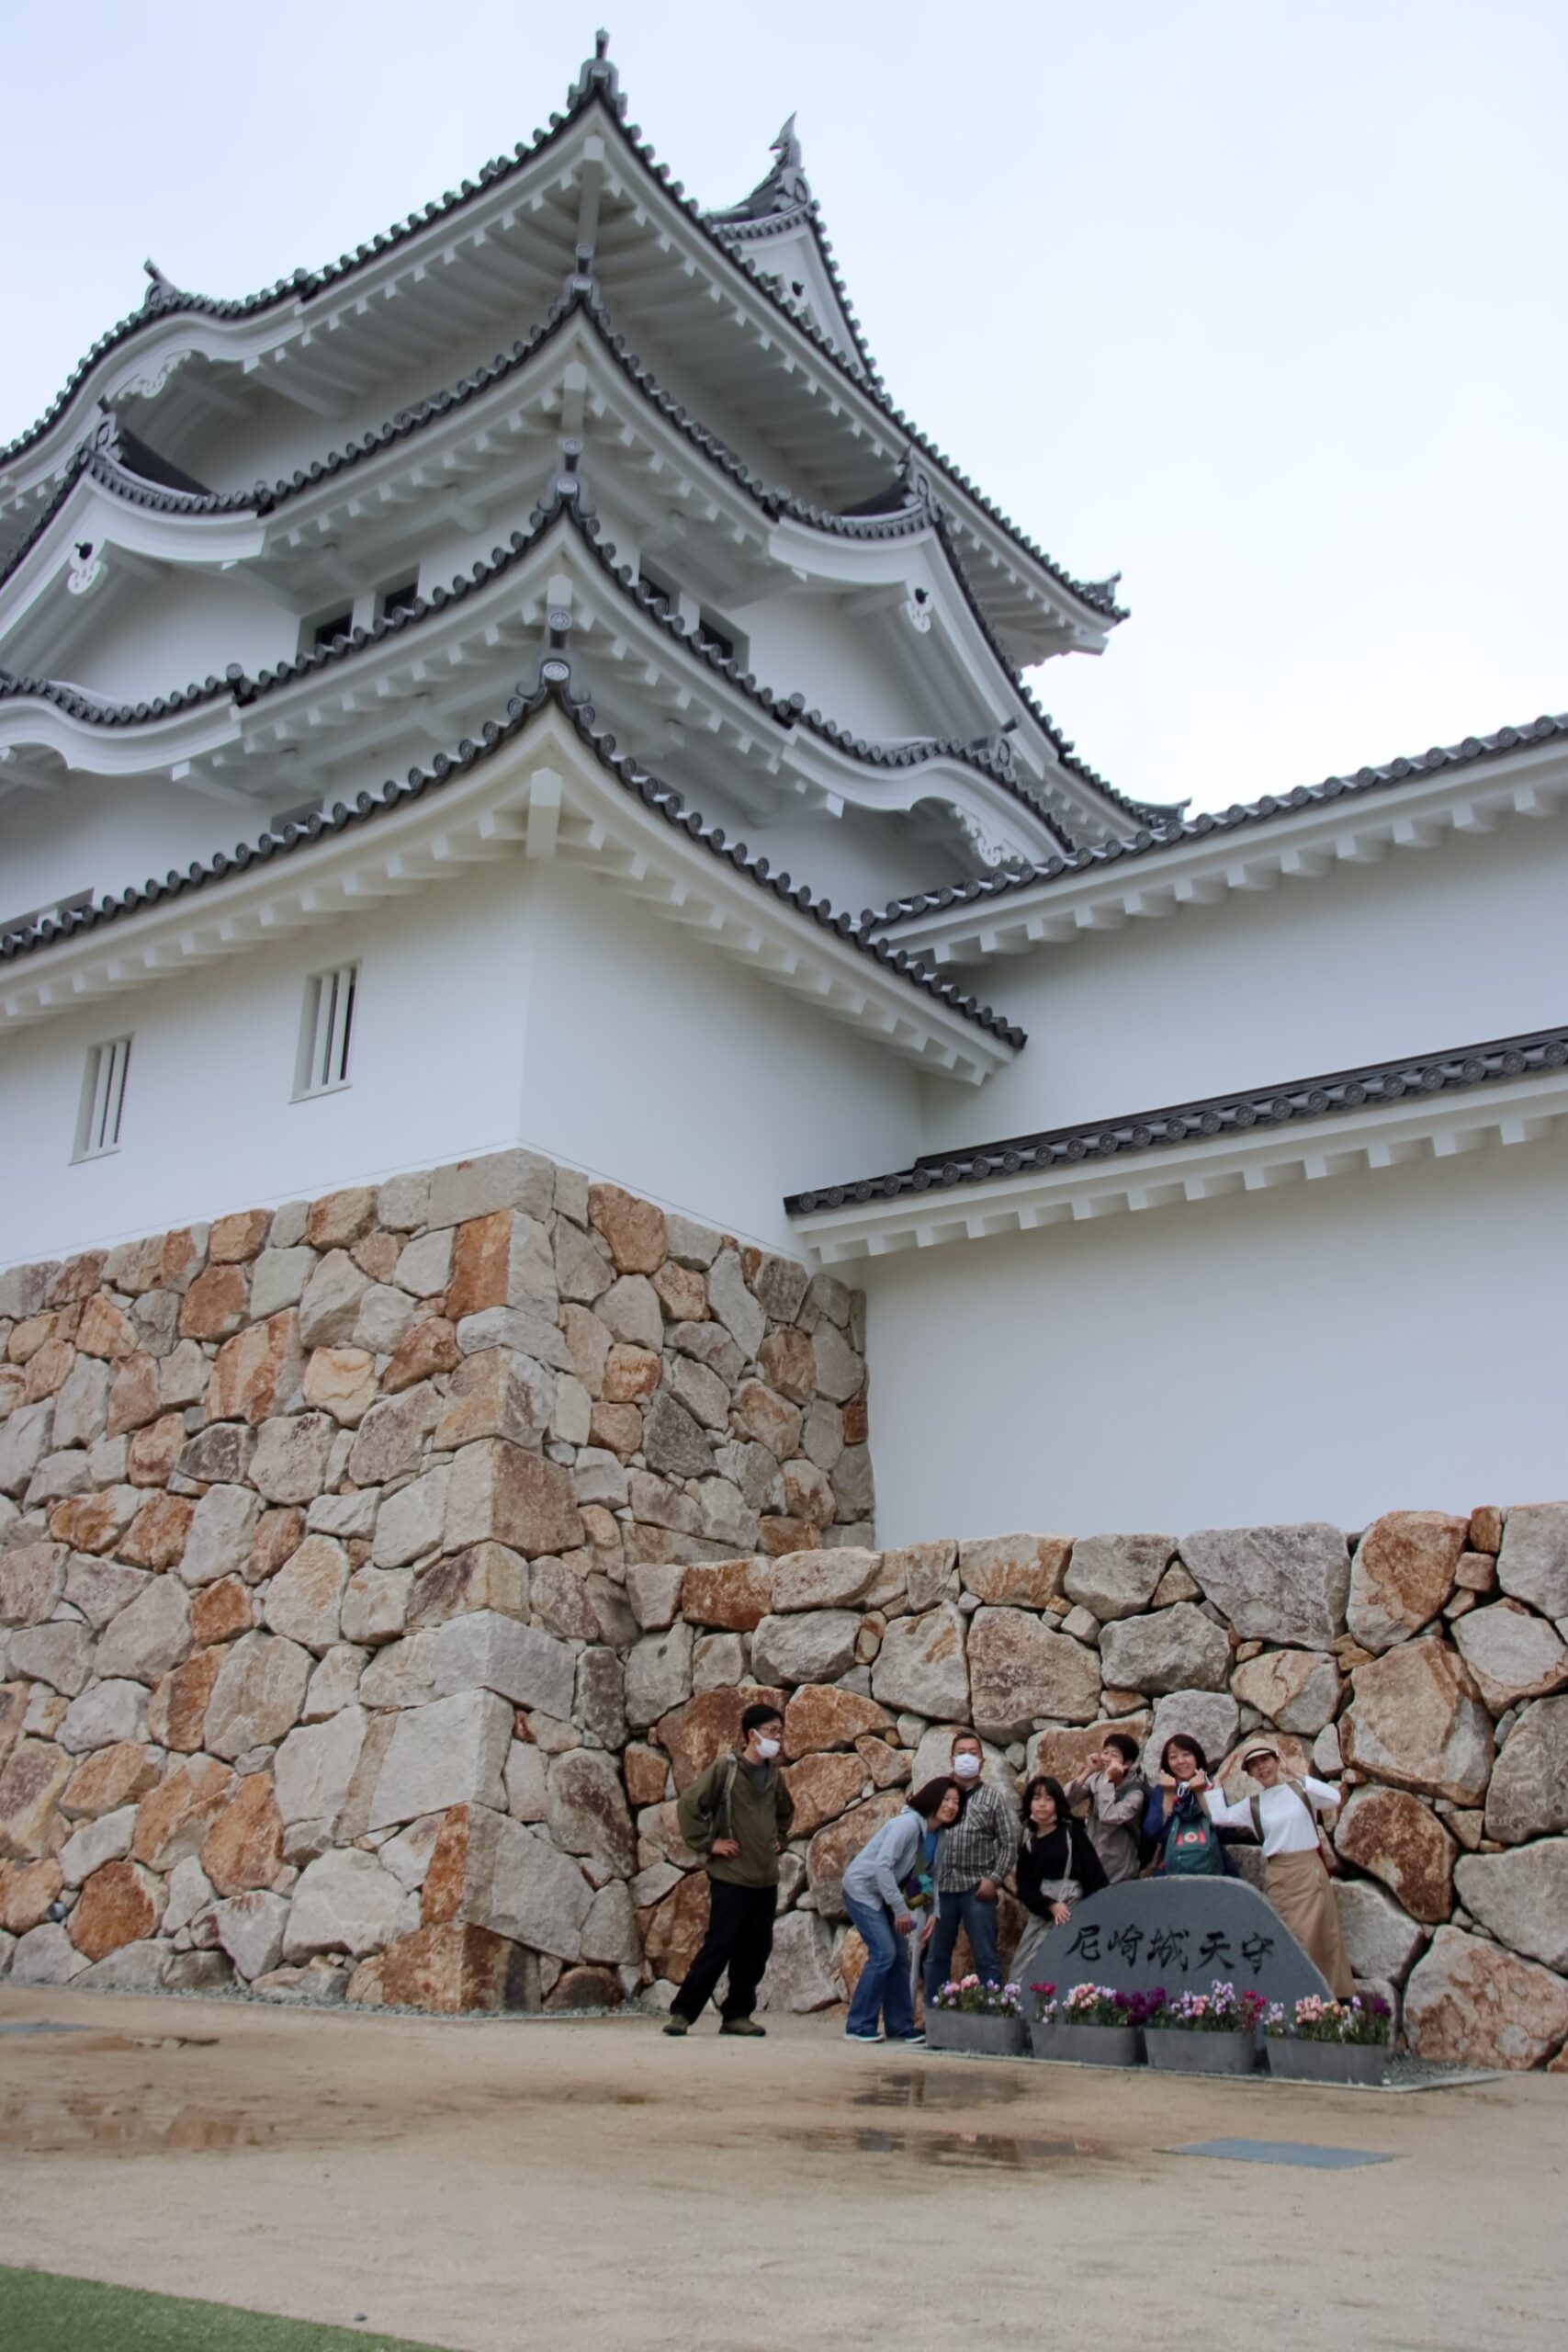 ブラっとまるこスタッフ現代に蘇った大坂城の西の守り尼崎城を楽しんだ一日☆